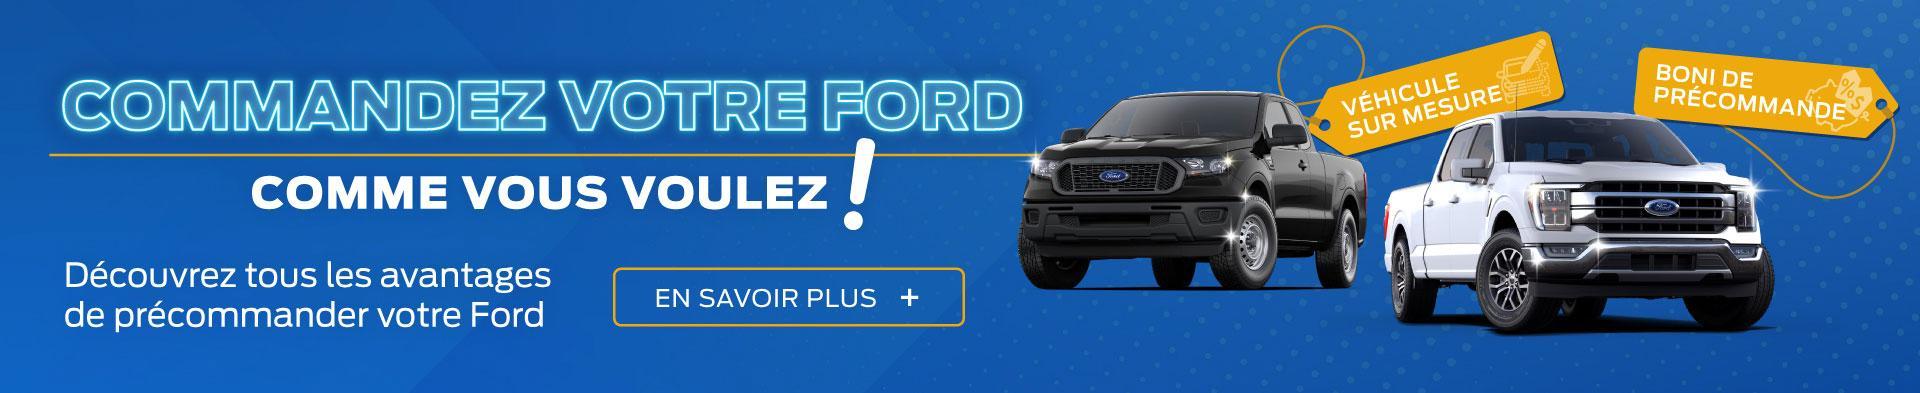 Commandez votre Ford